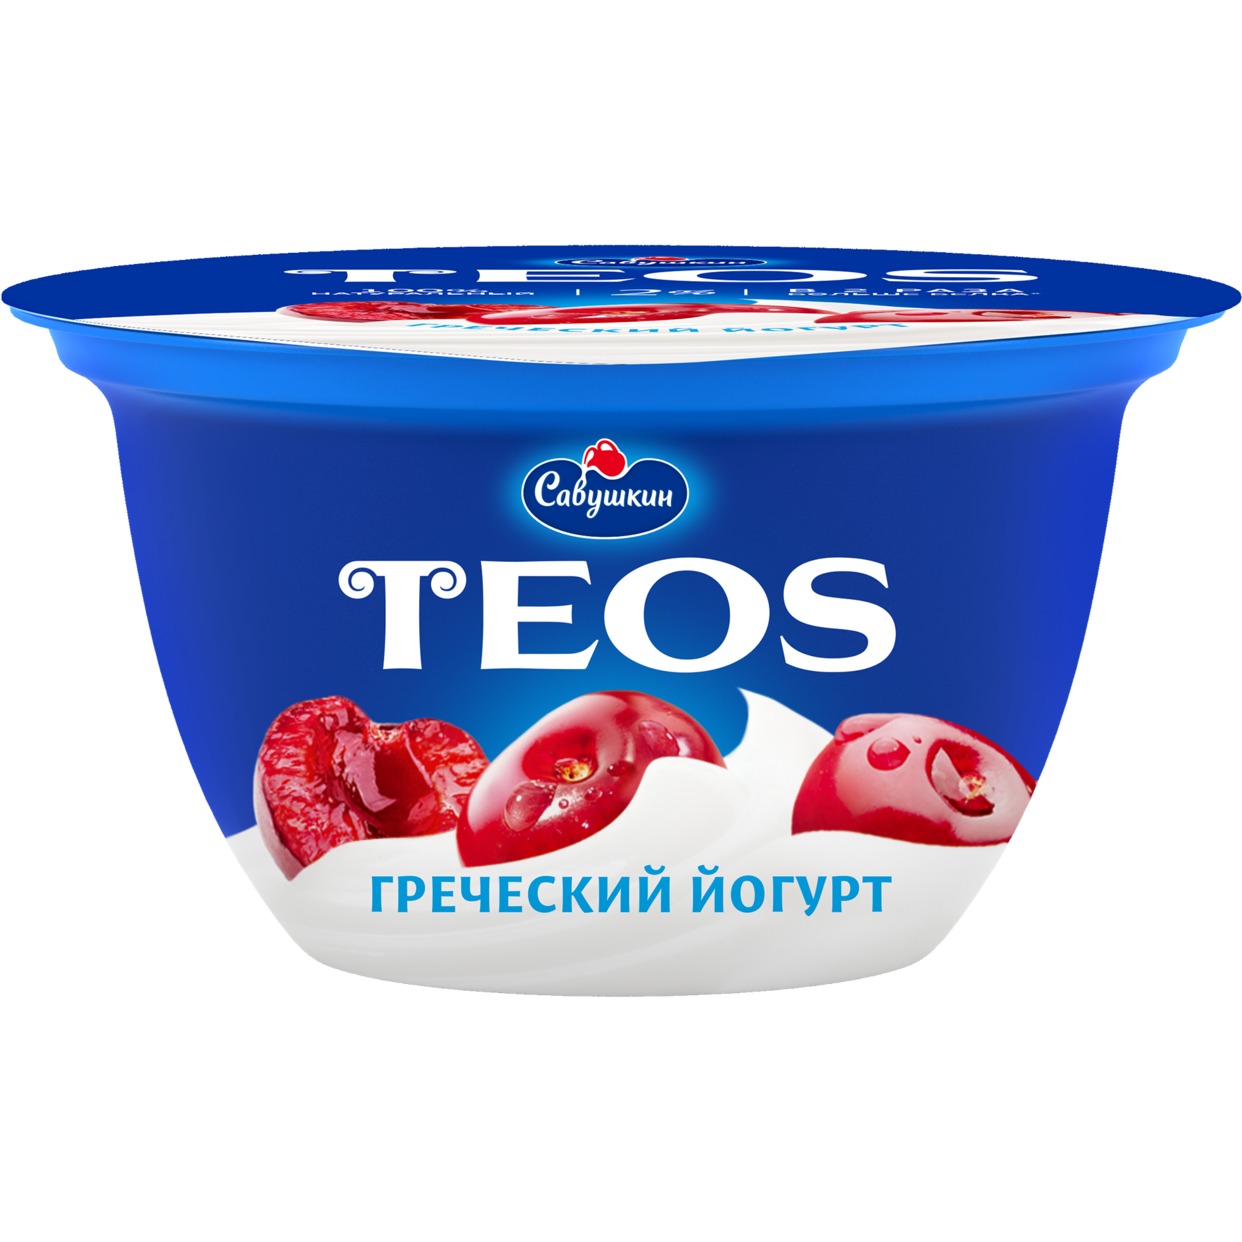 Йогурт "Греческий"массовой долей жира 2,0% с фруктовым наполнителем "вишня", 140 гр.